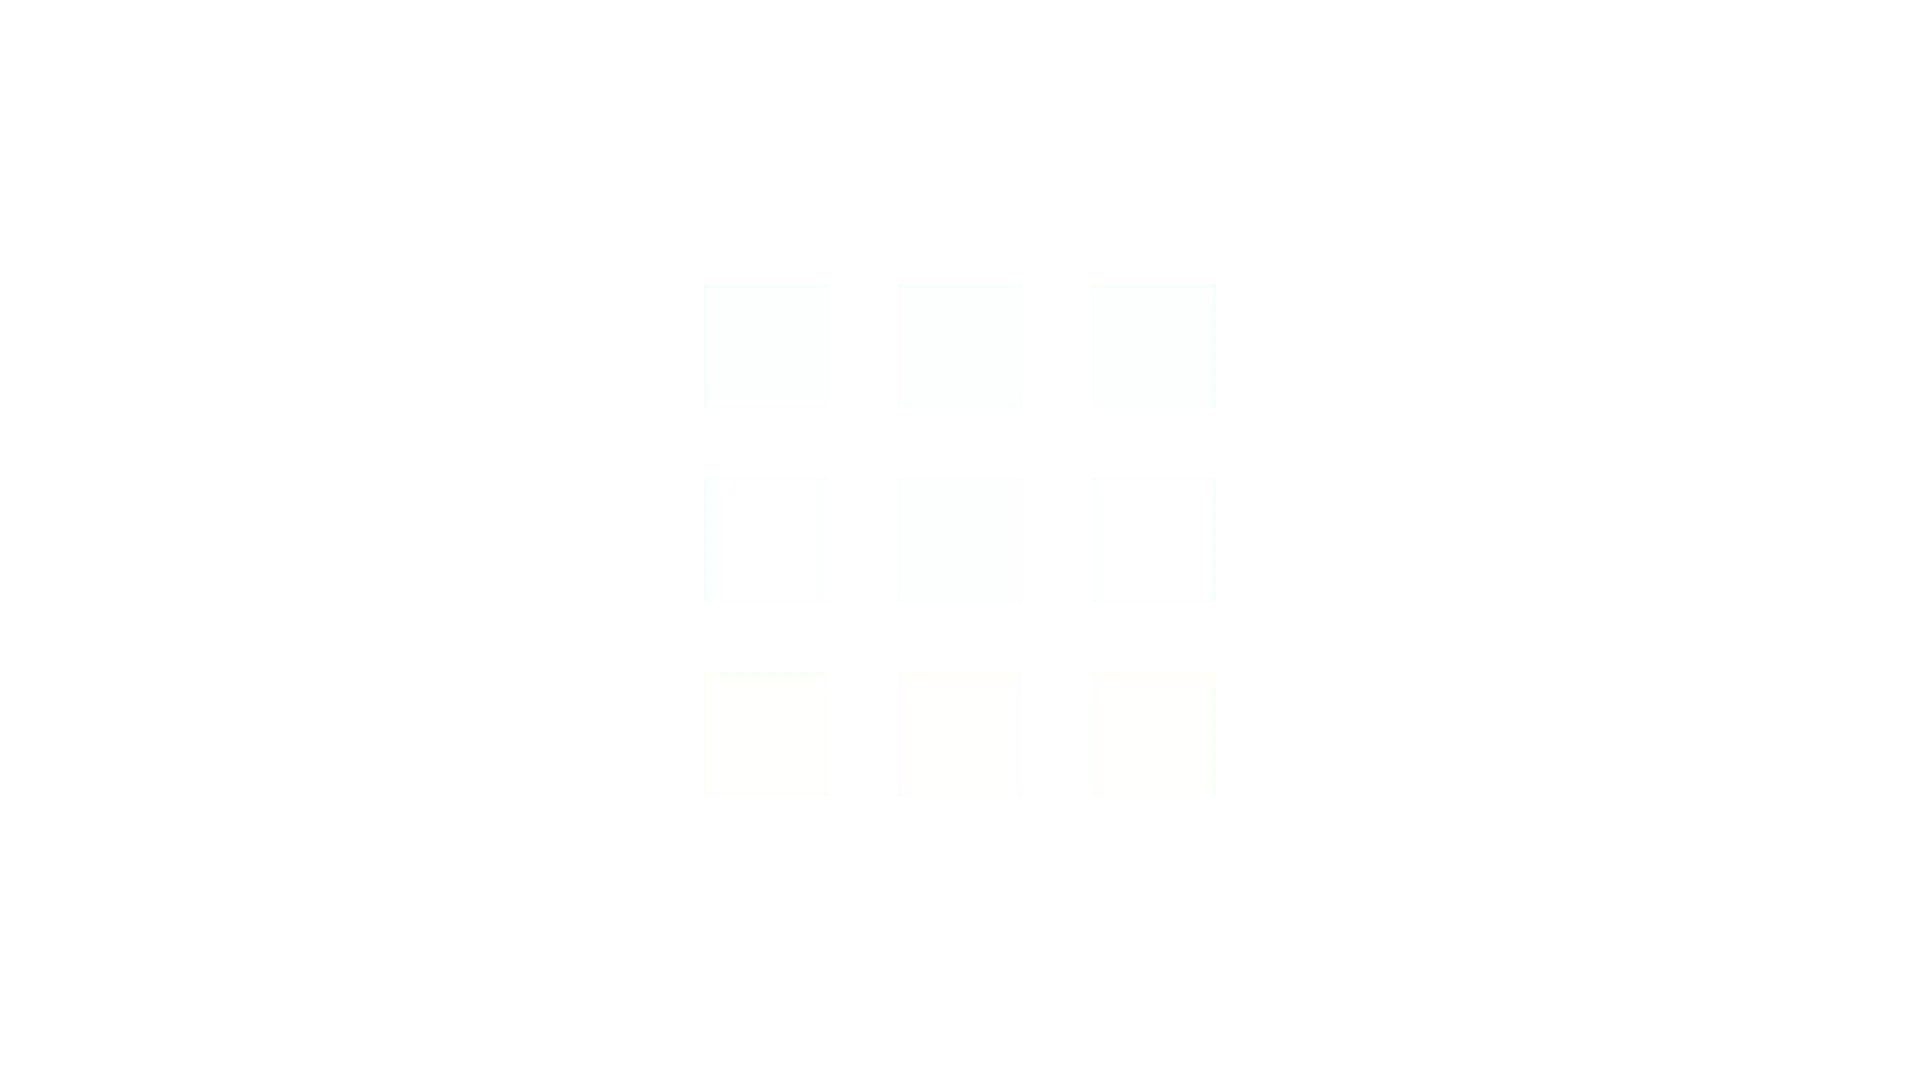 Simbolo de vários quadrados representando sites